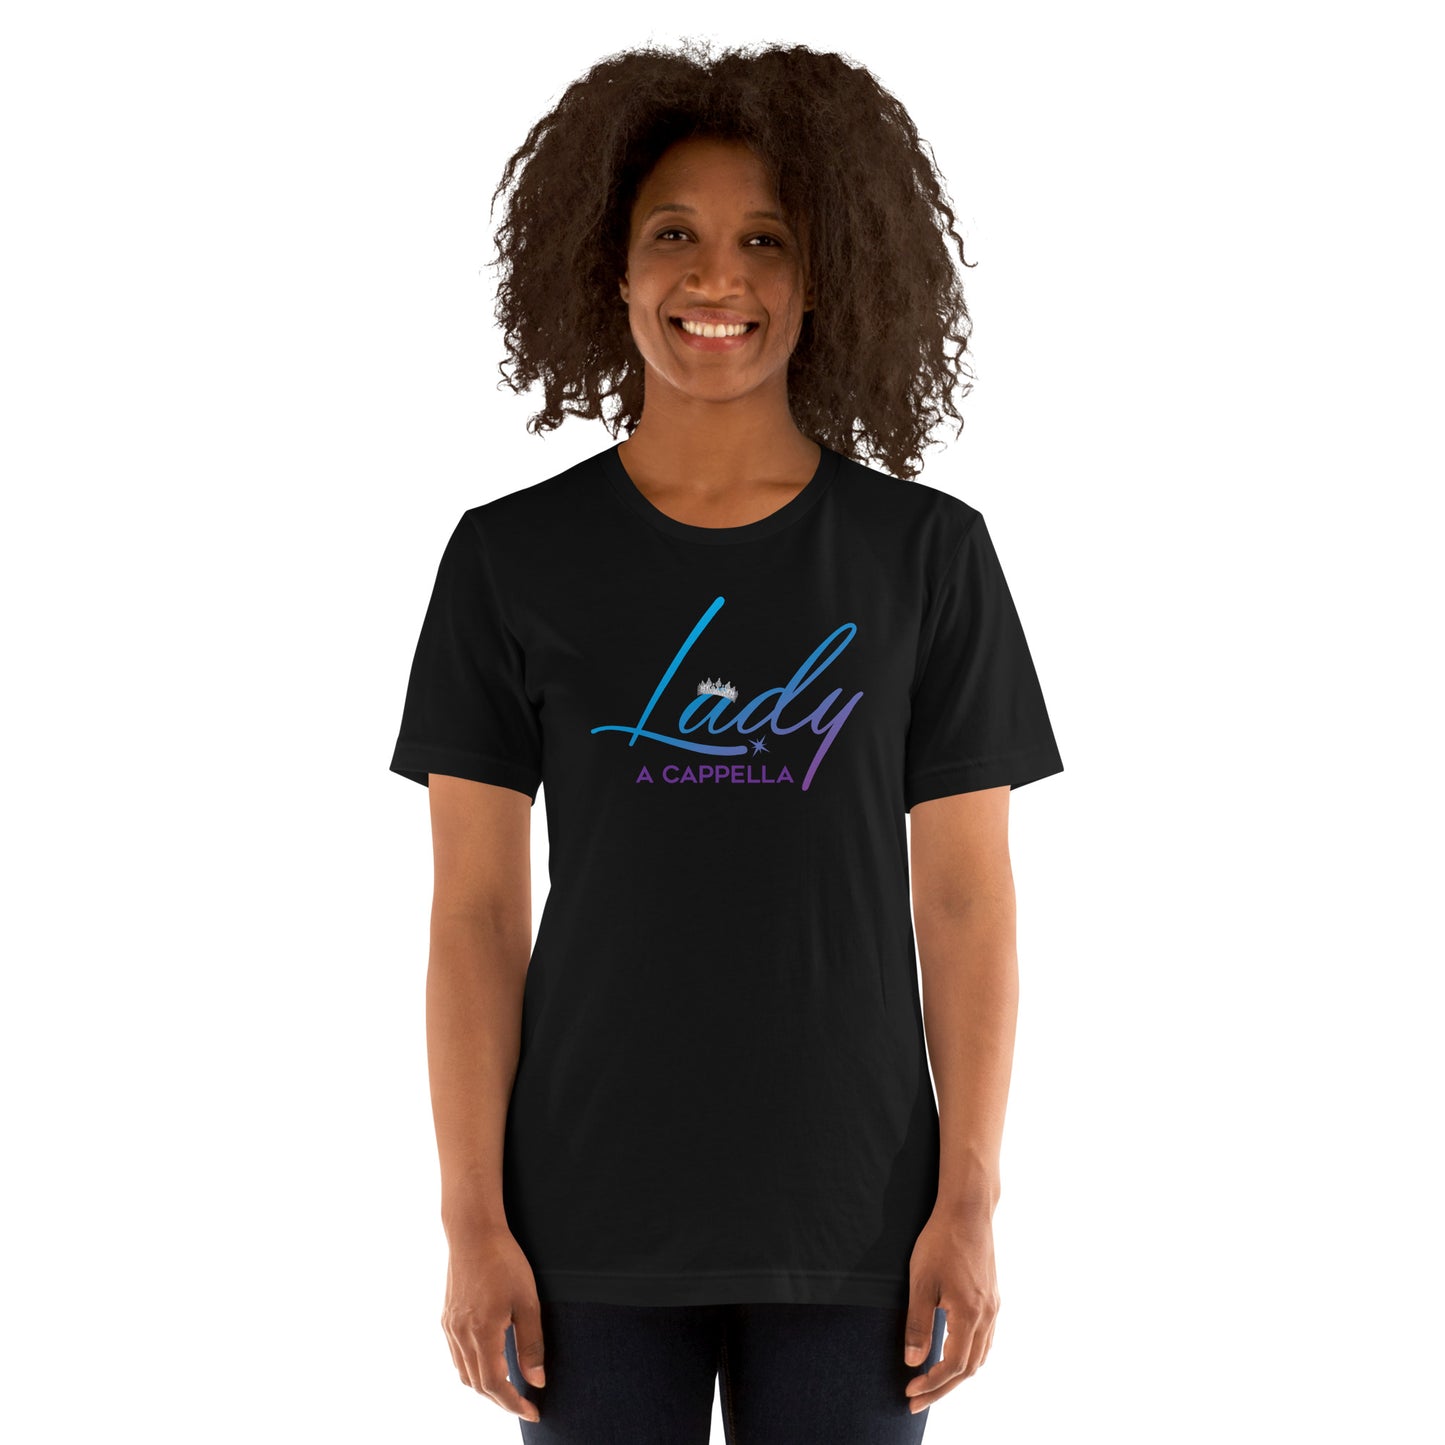 Lady A Cappella - Regular Fit Unisex t-shirt